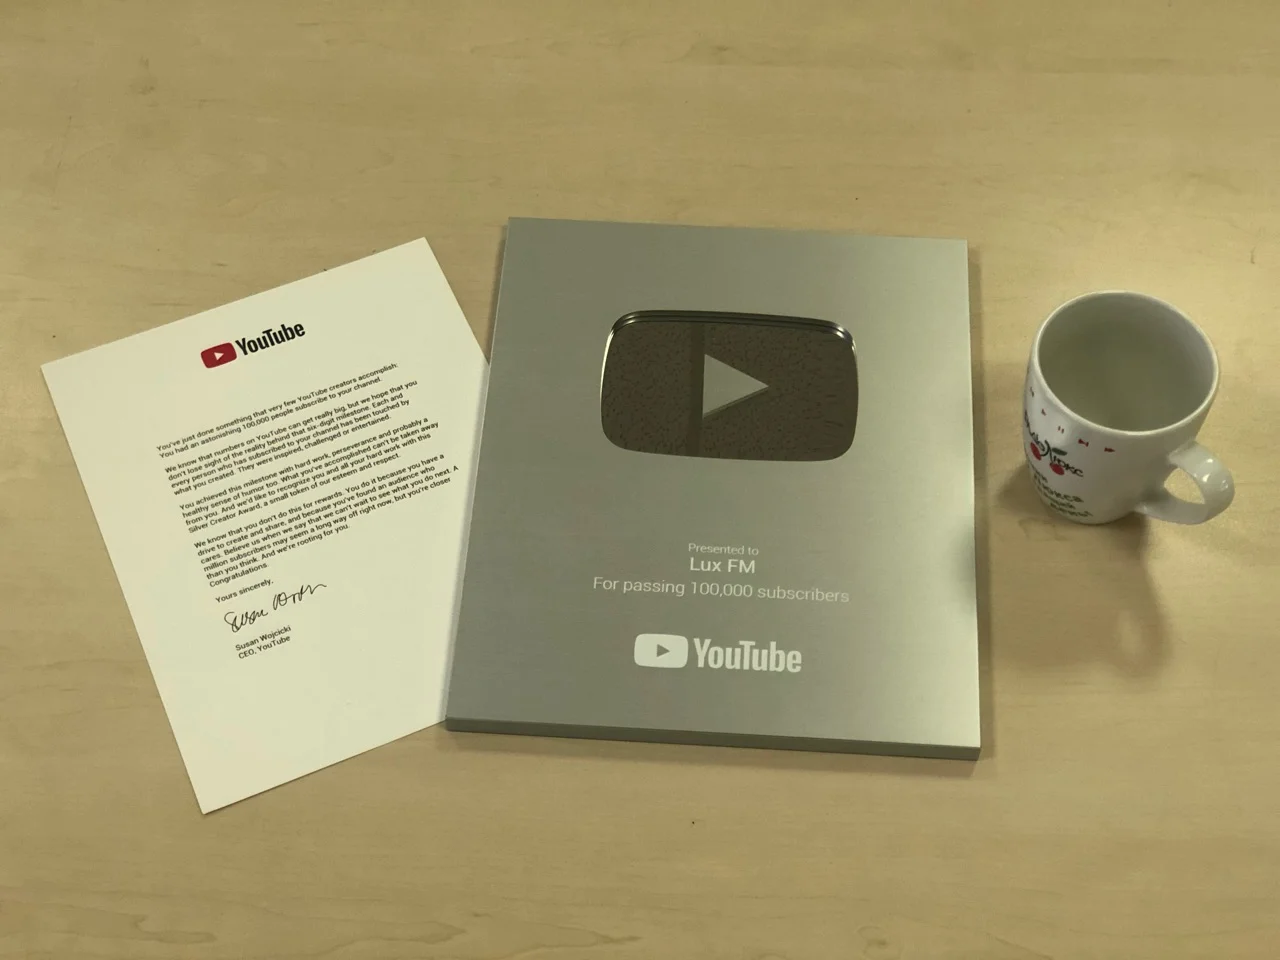 Гордость и счастье: Люкс ФМ получил серебряную кнопку YouTube - фото 401610